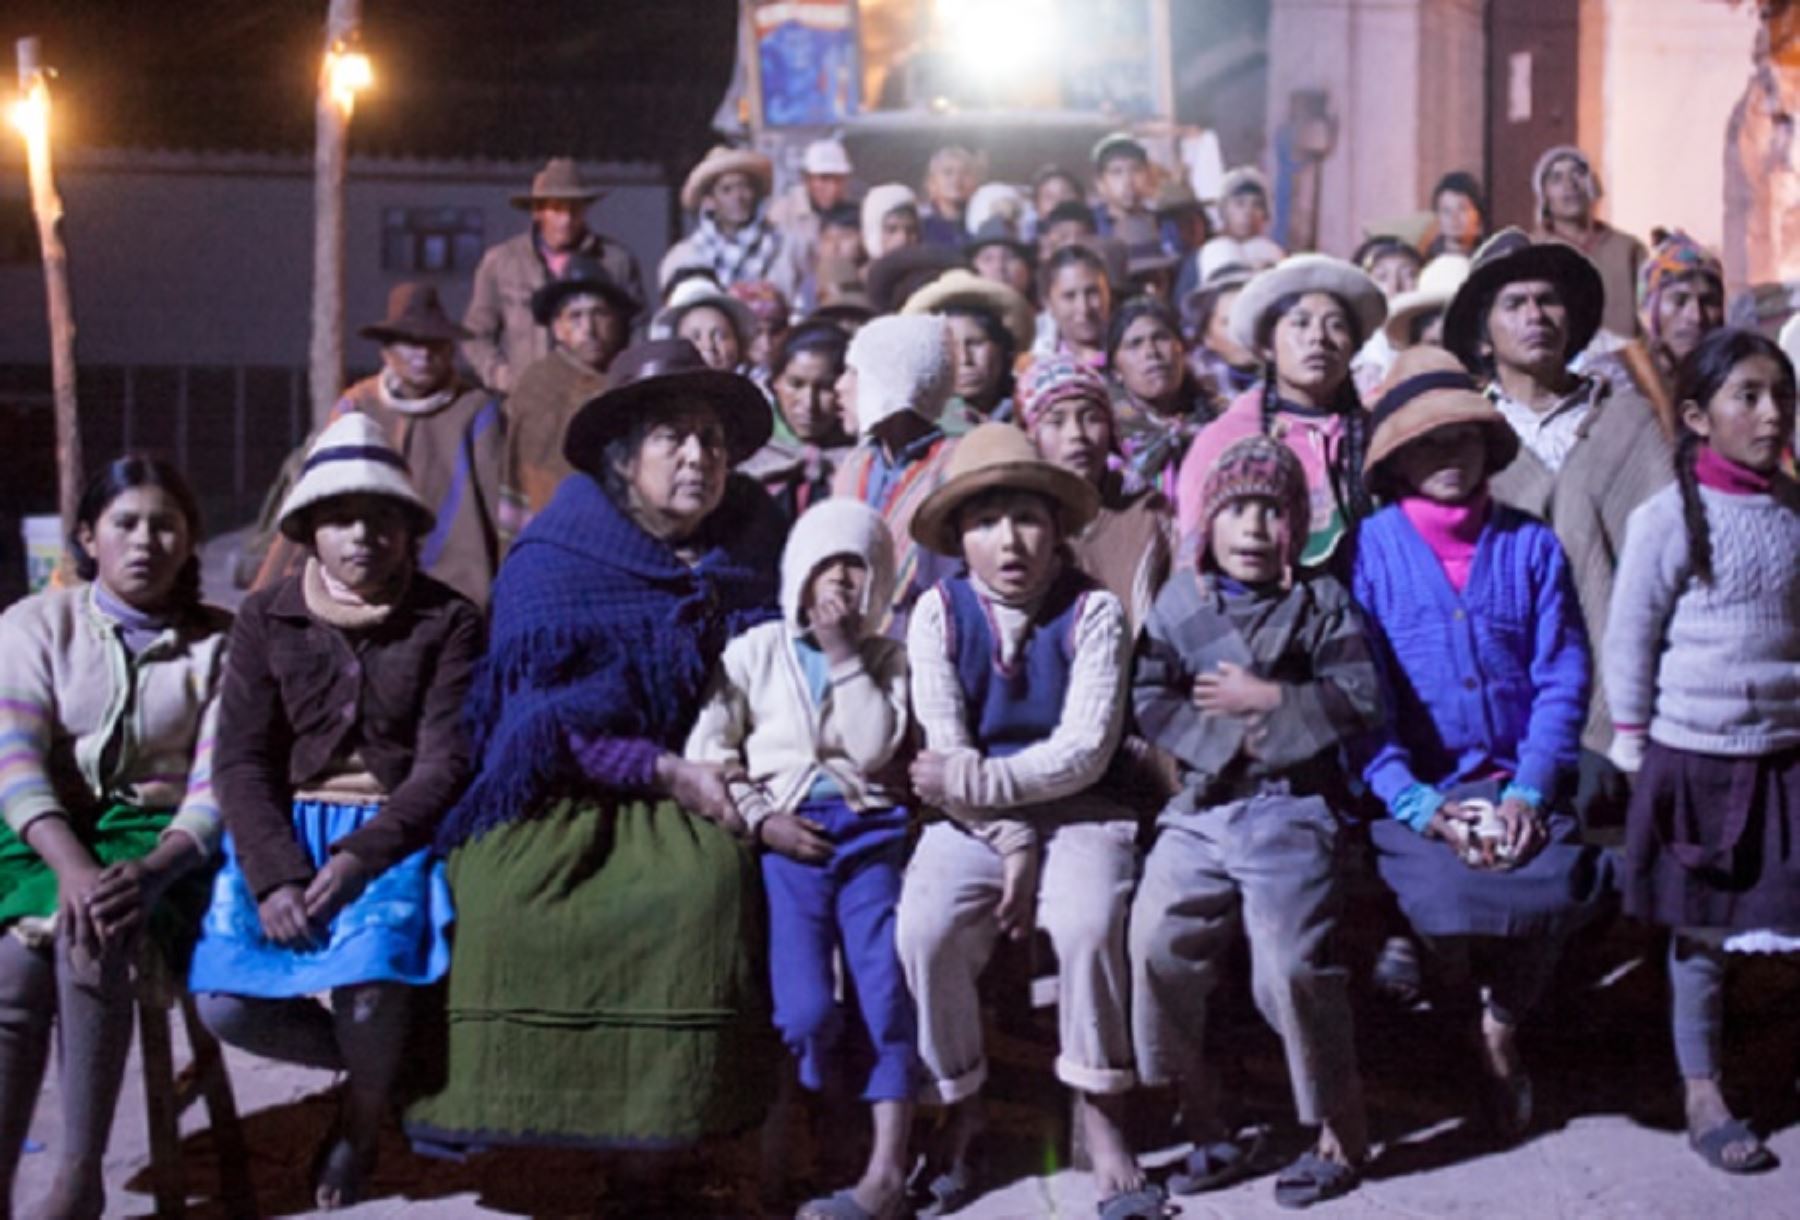 El Ministerio de Cultura entregó el premio a la Mejor Película Peruana del 26° Festival de Cine de Lima PUCP al largometraje rodado en Cusco, “Willaq pirqa, el cine de mi pueblo”, dirigida por César Galindo y donde los diálogos se realizan en quechua.